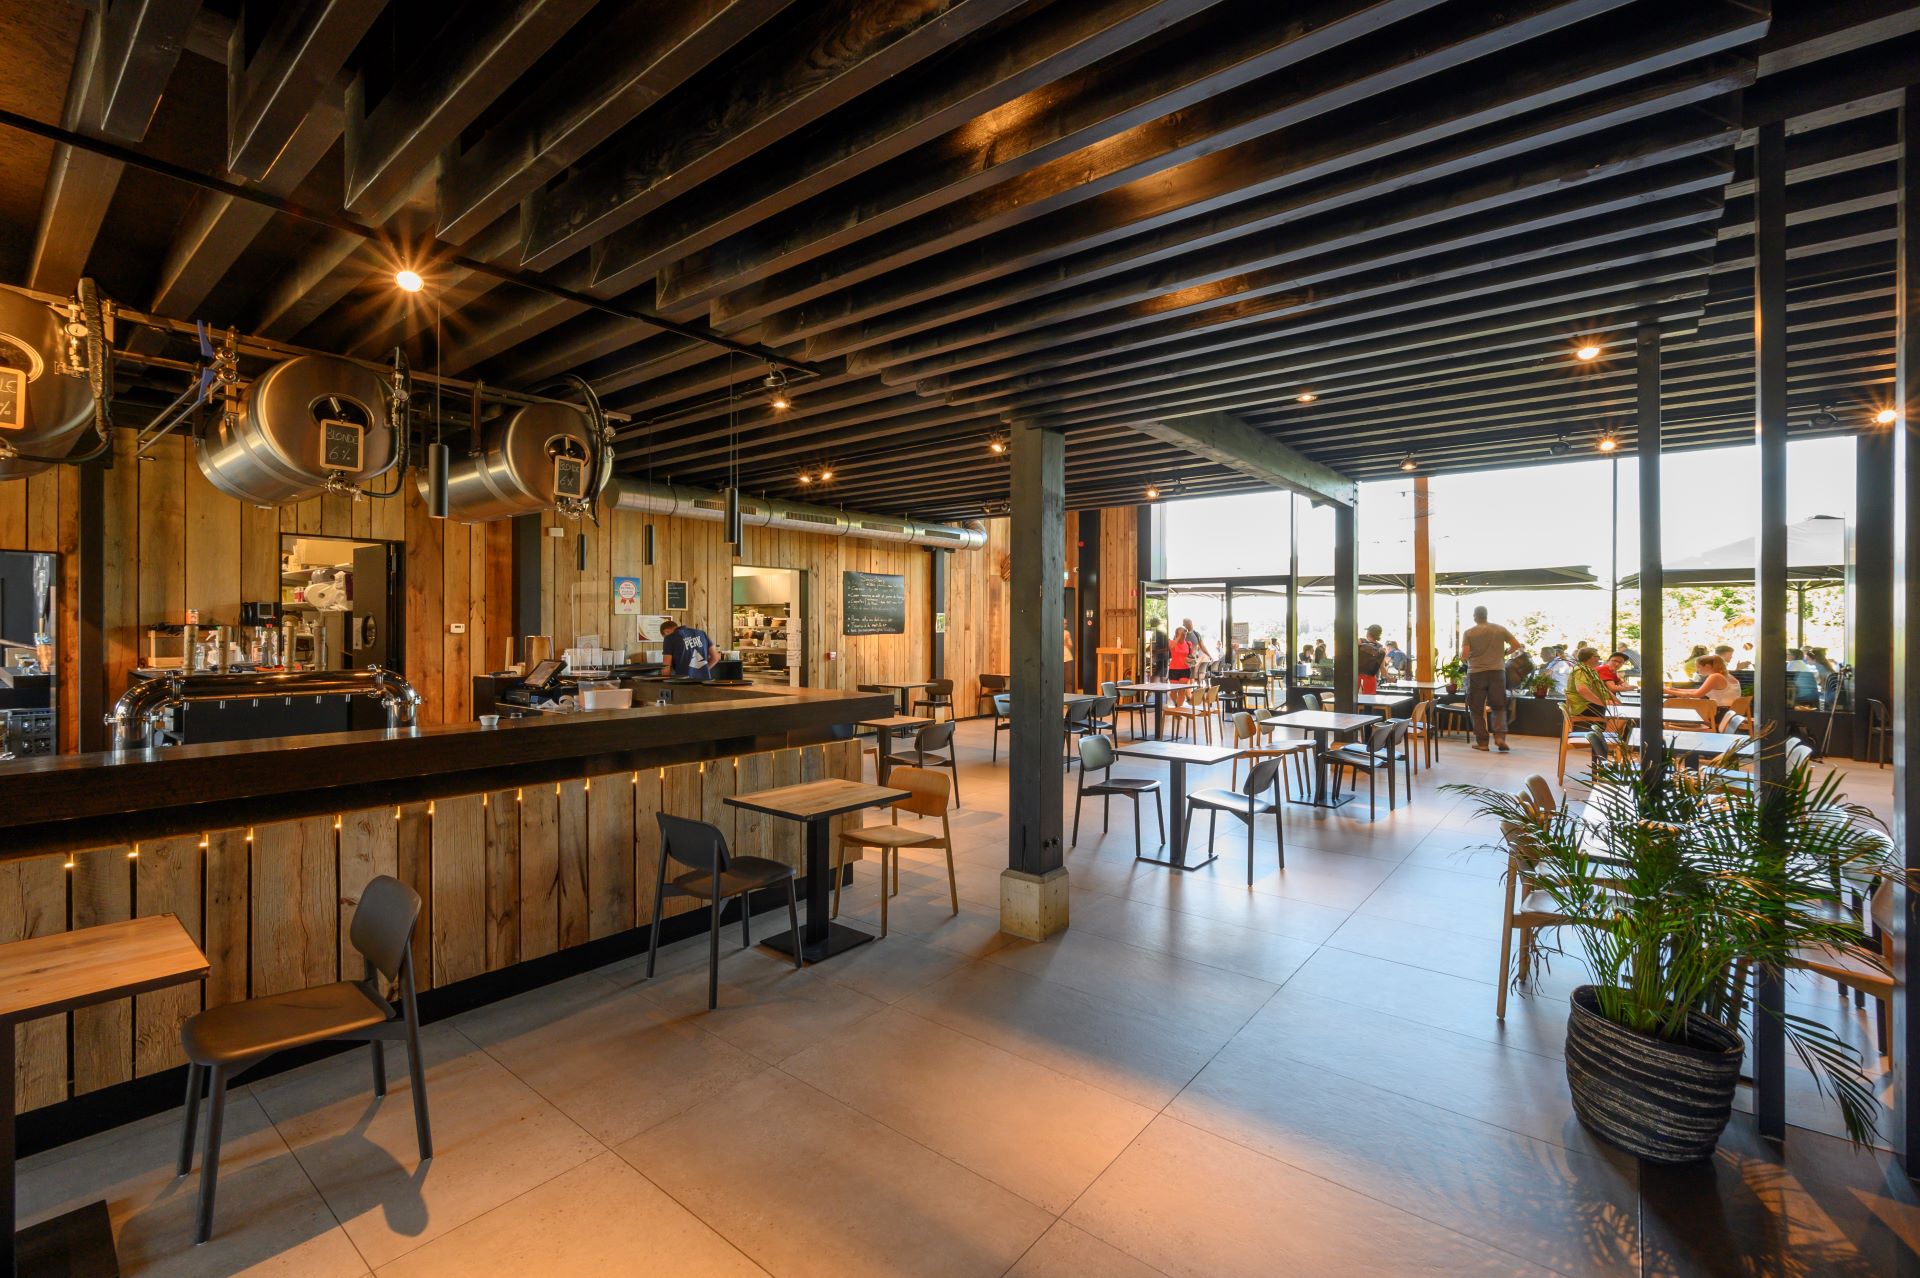 Im Inneren eines gemütlichen, aber modernen Restaurants sind die Wände, Tische und Stühle aus Holz. Im hinteren Teil des Restaurants sorgen raumhohe Fenster für schönes natürliches Licht.